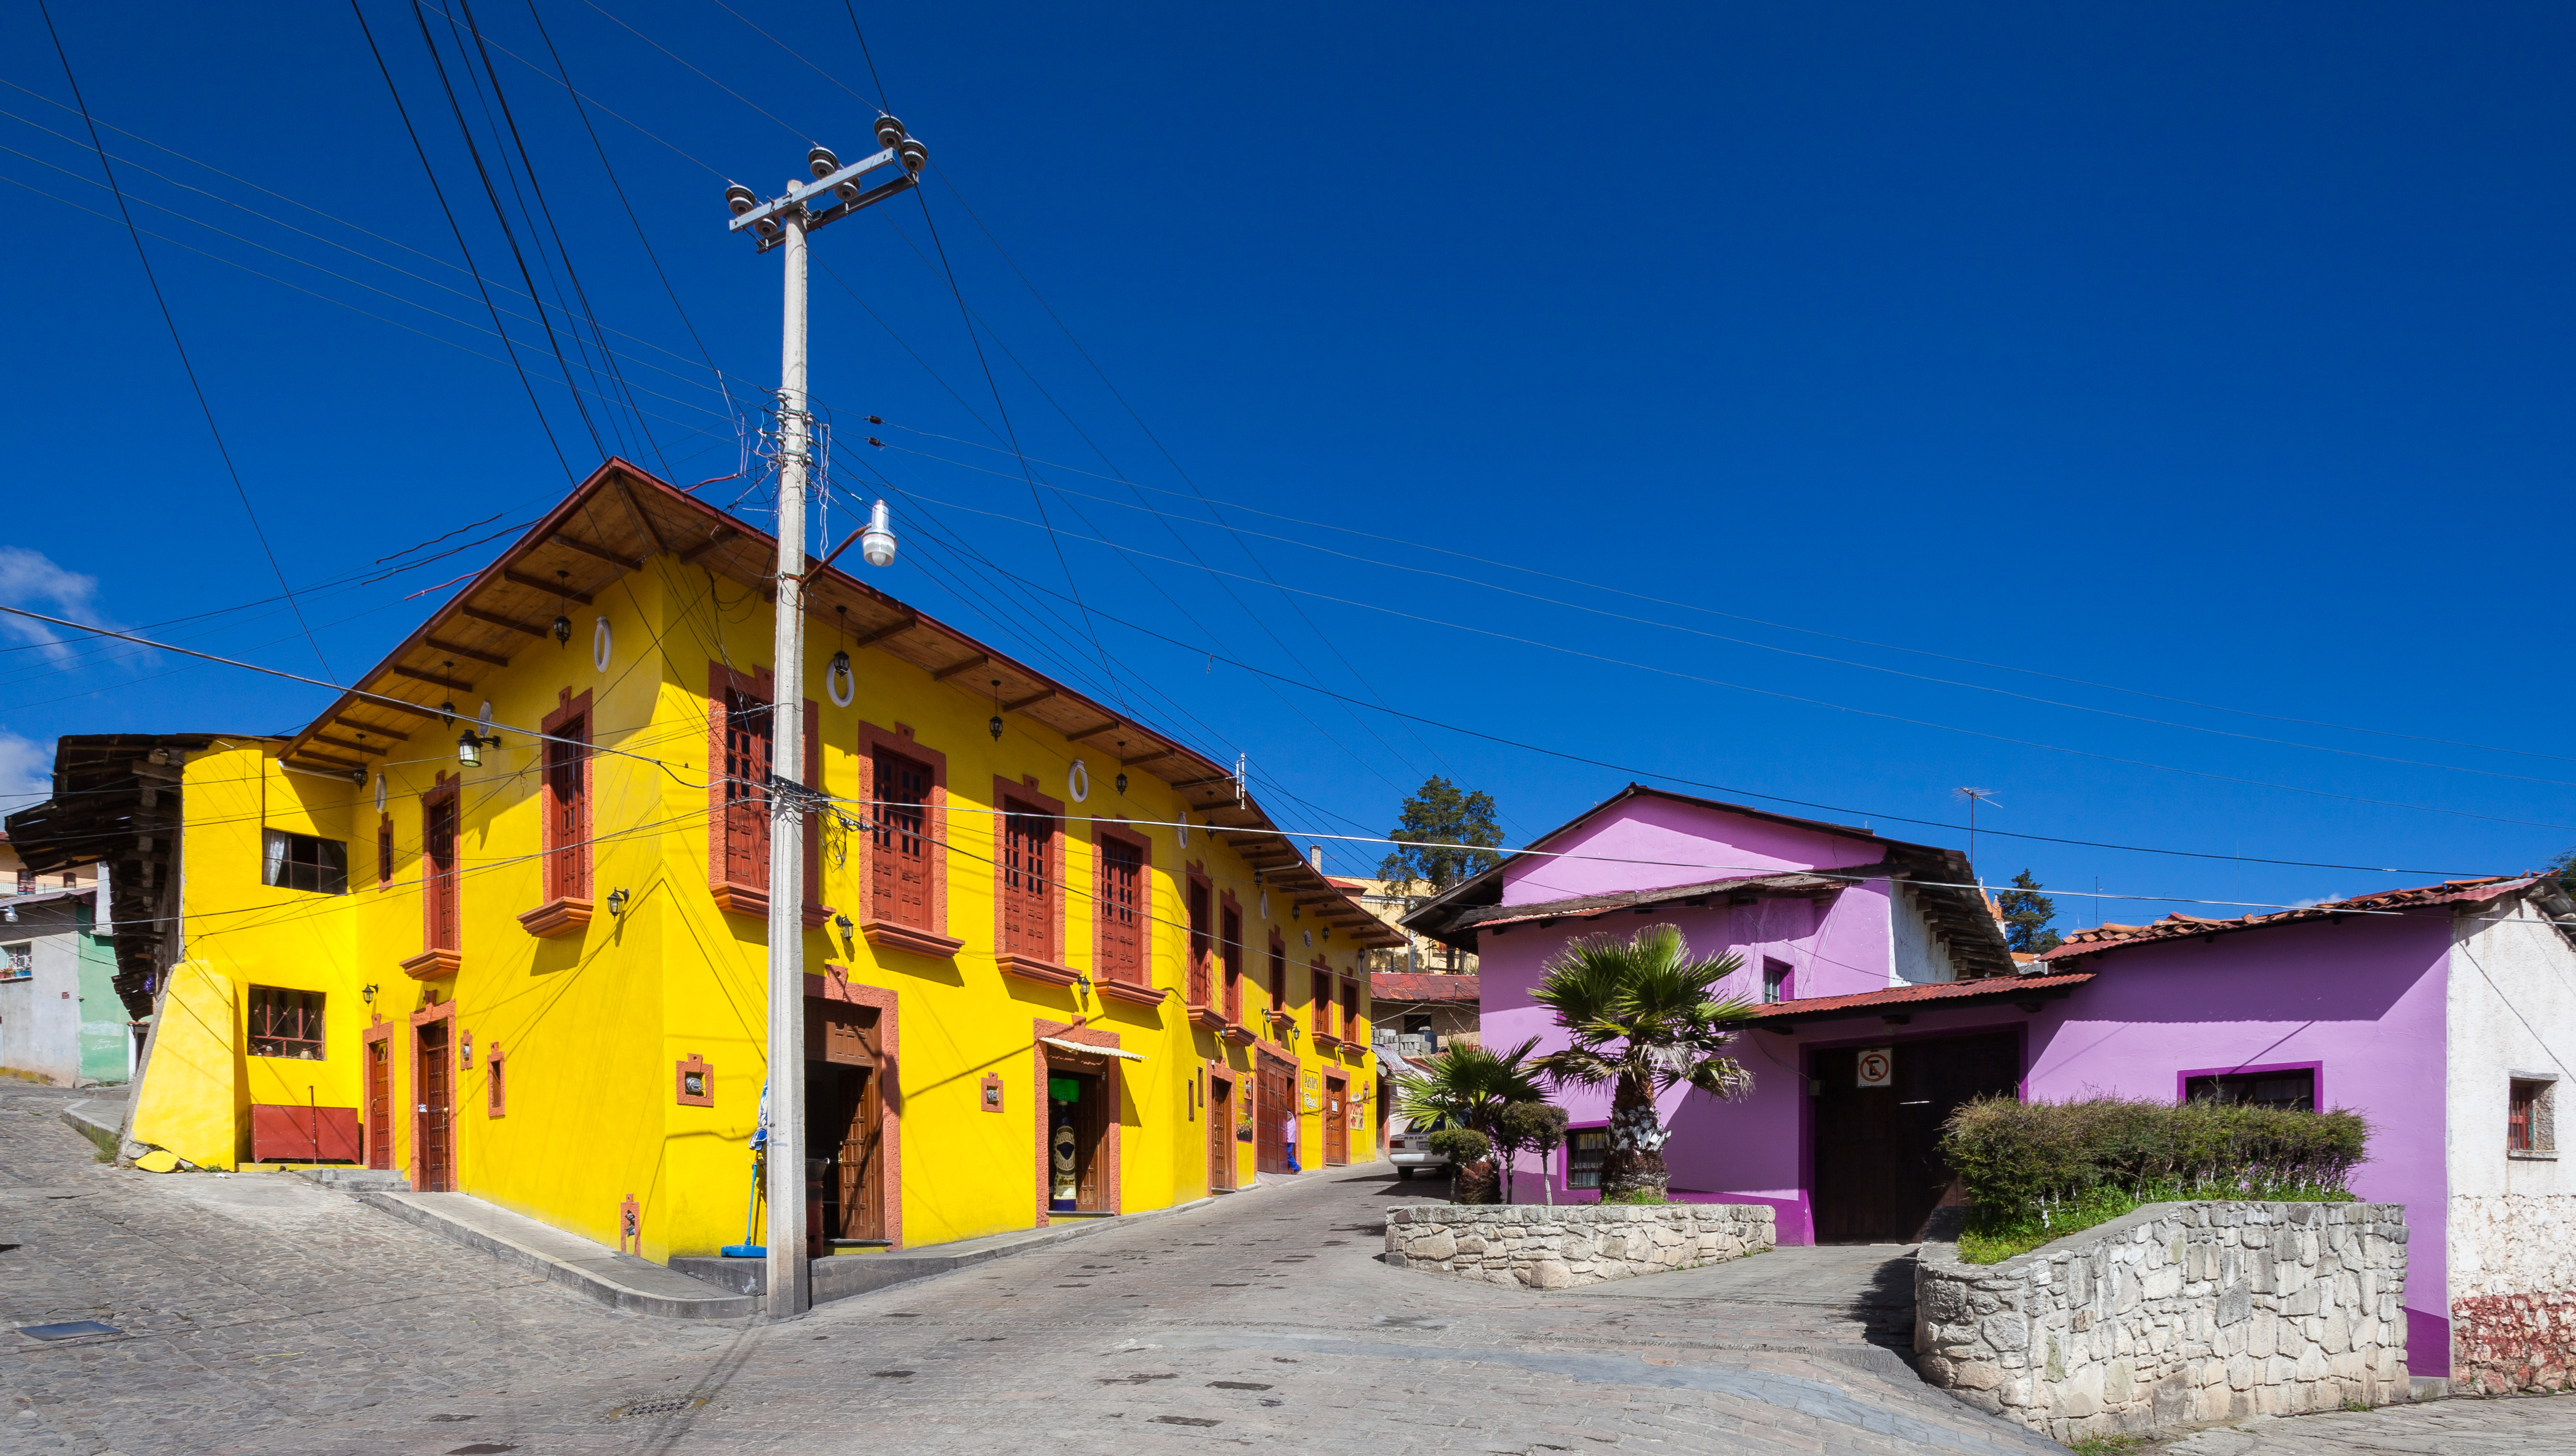 Casa en Real del Monte, Hidalgo, México, 2013-10-10, DD 01